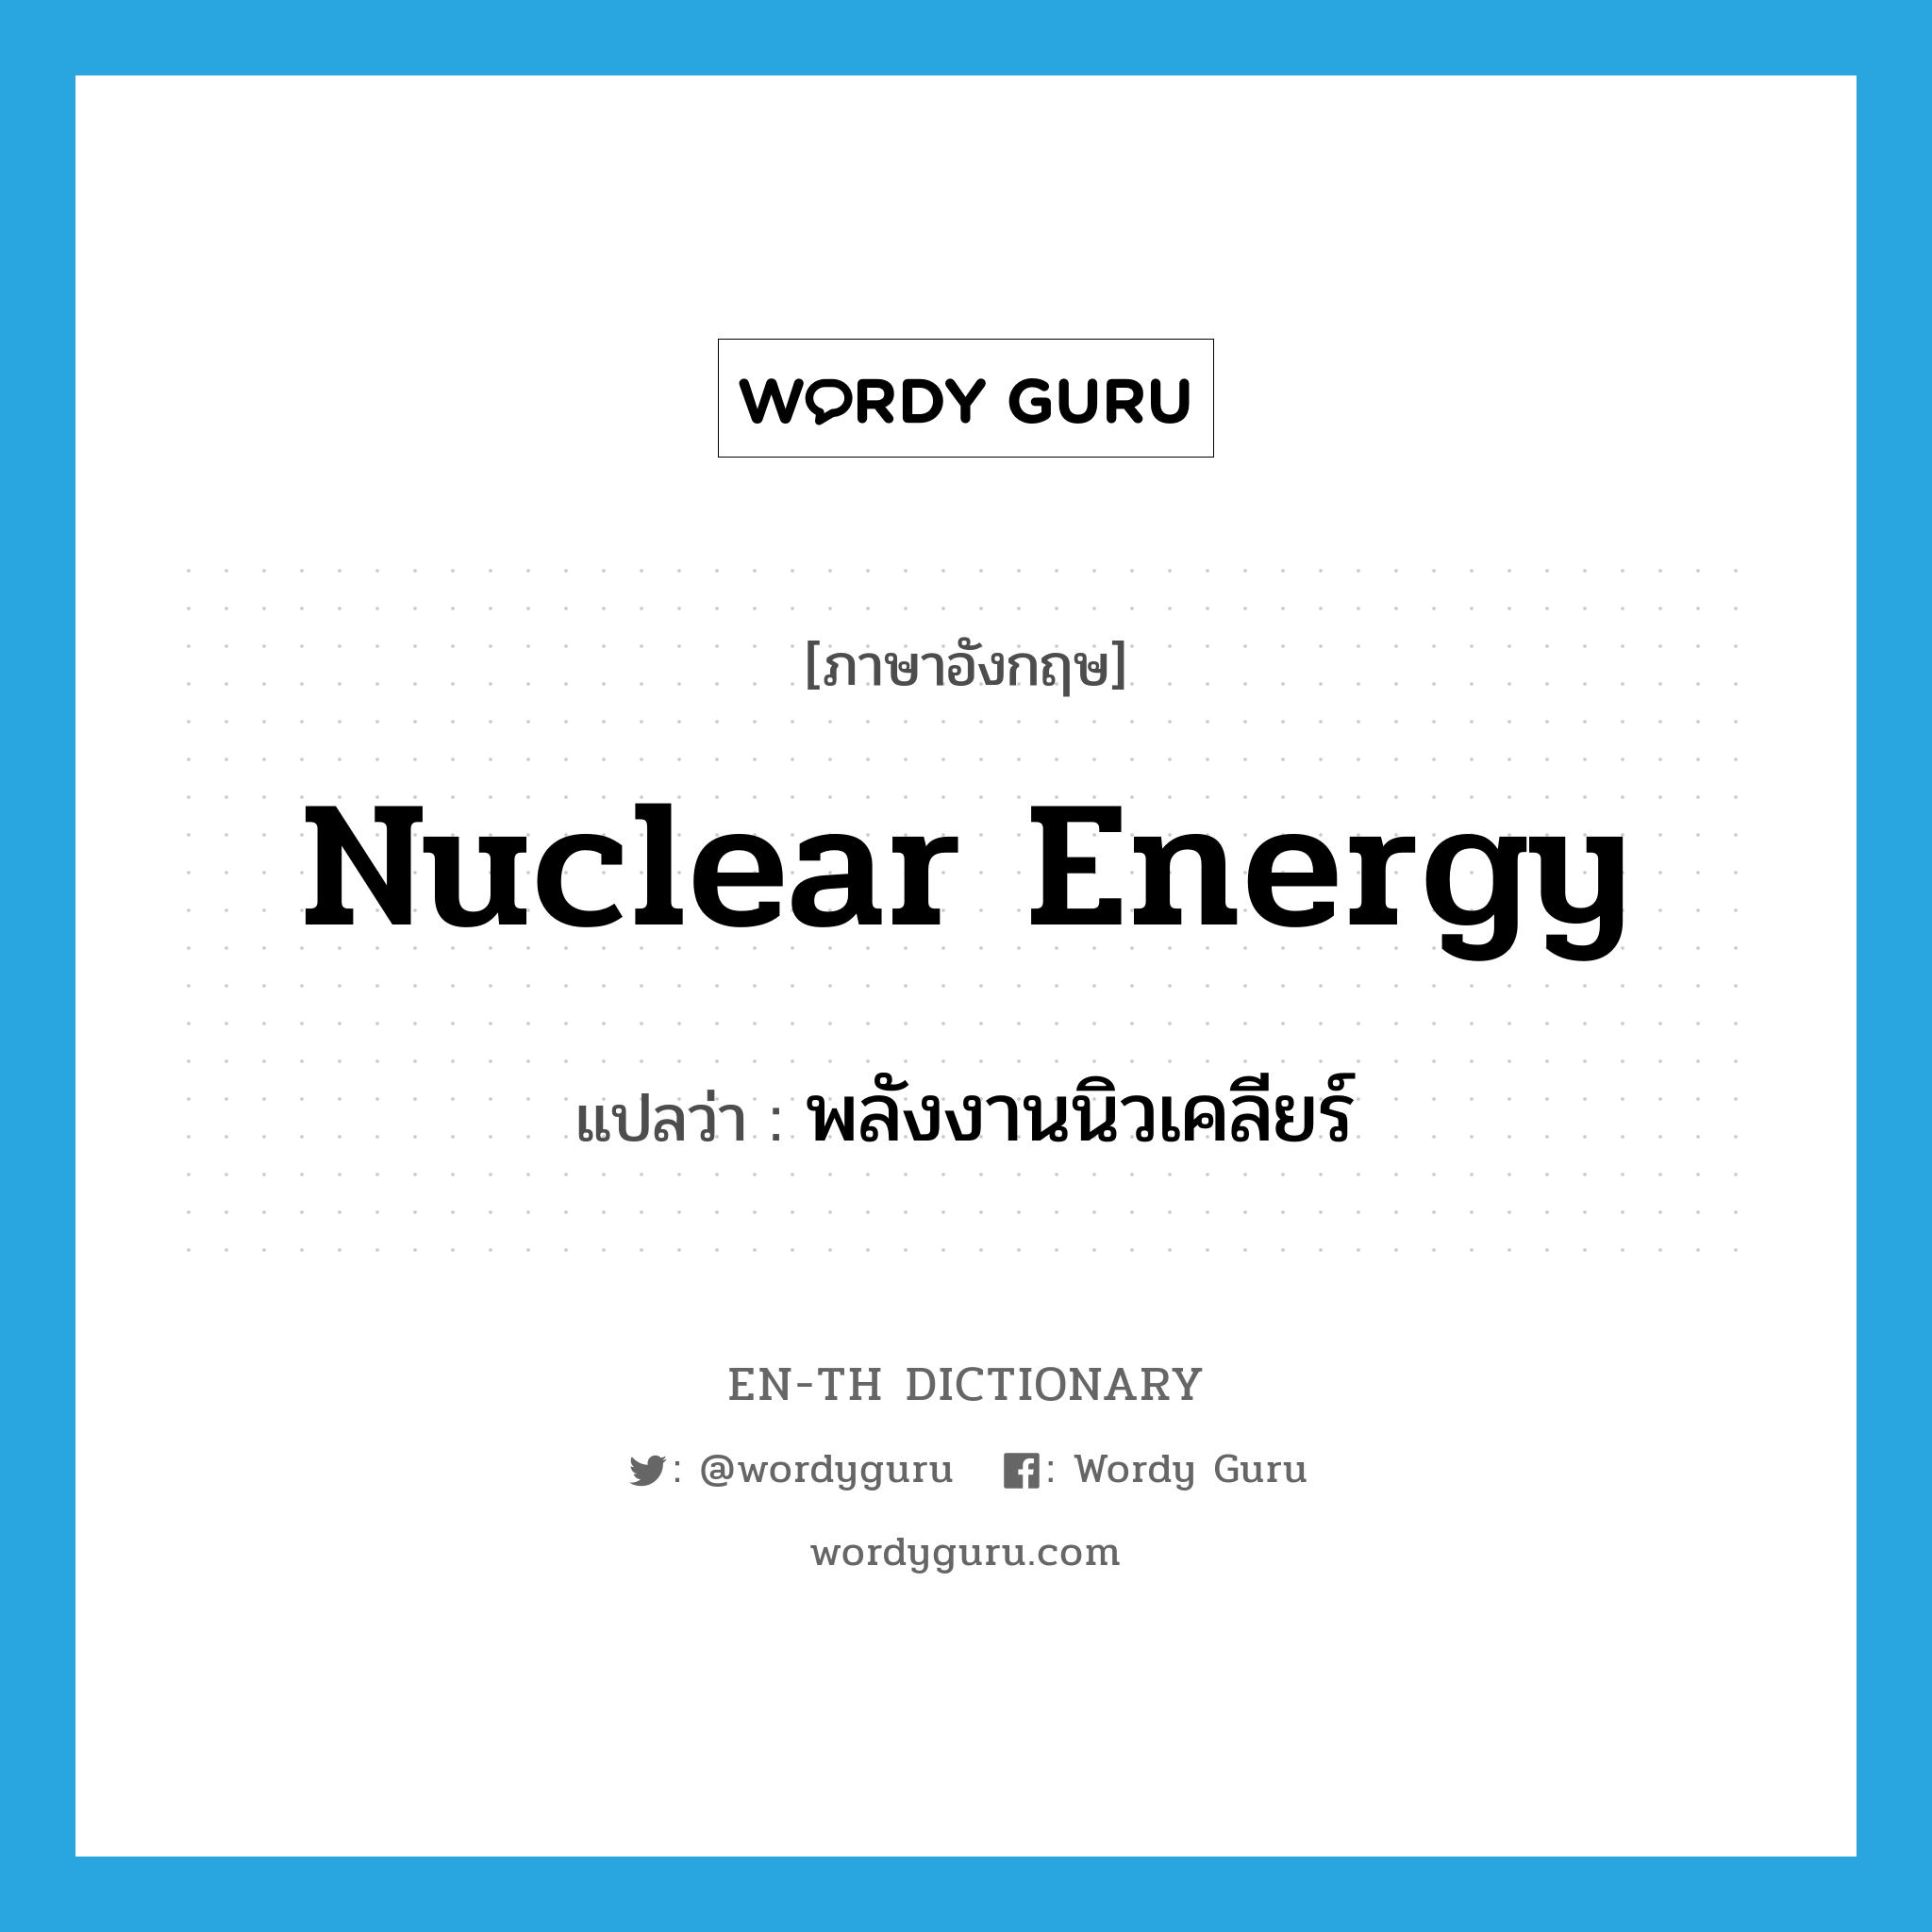 nuclear energy แปลว่า?, คำศัพท์ภาษาอังกฤษ nuclear energy แปลว่า พลังงานนิวเคลียร์ ประเภท N หมวด N